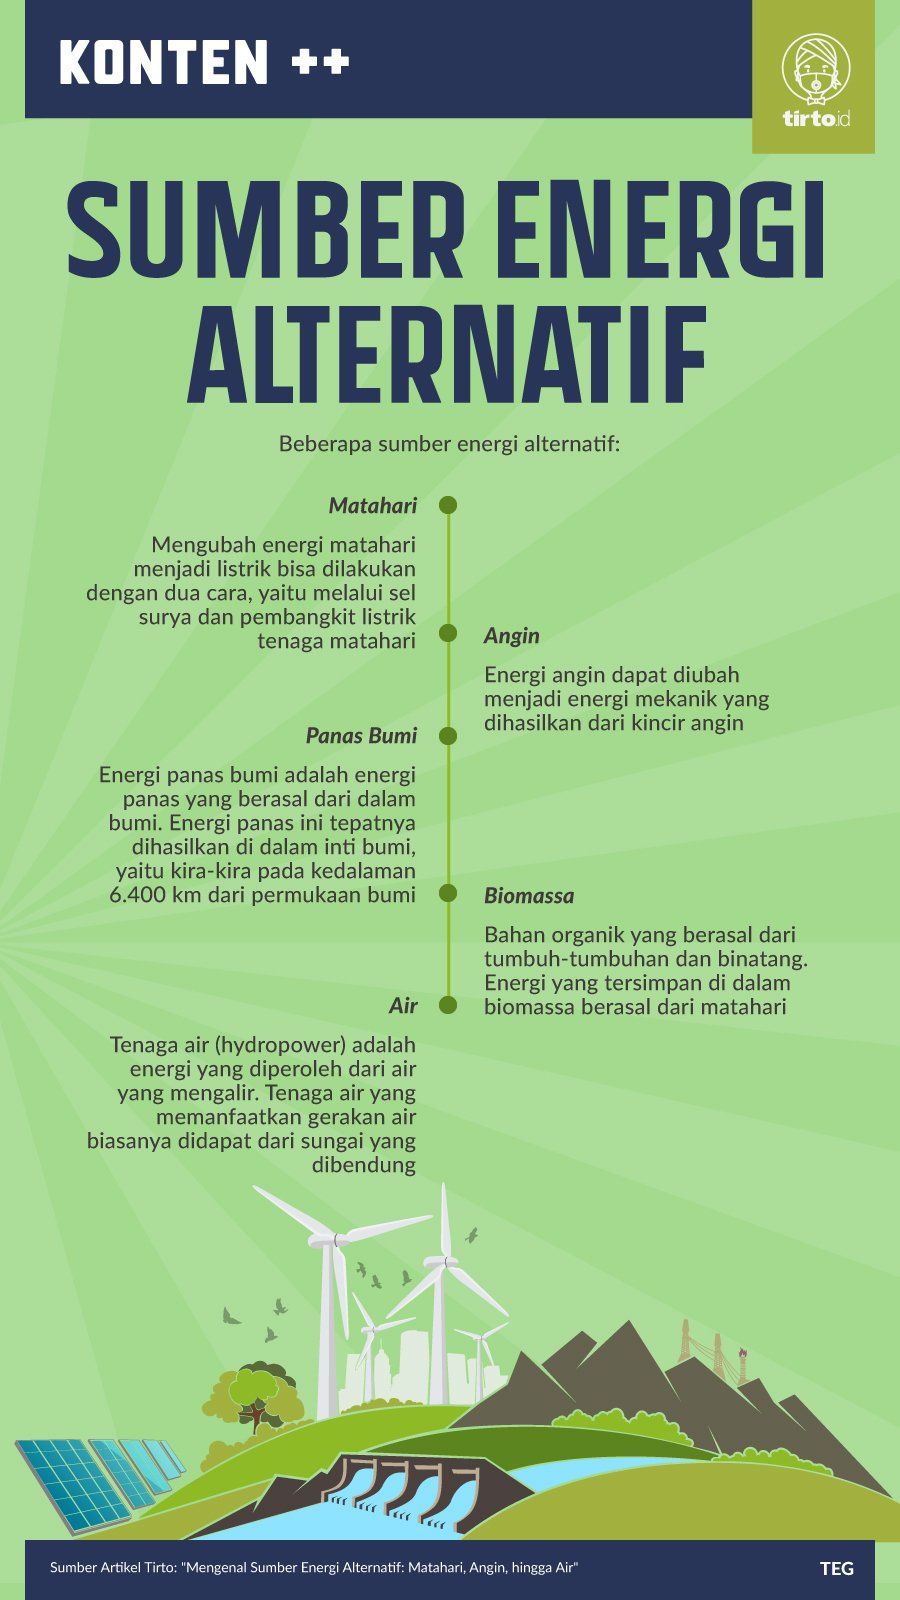 Turbin angin mengubah energi gerak menjadi energi